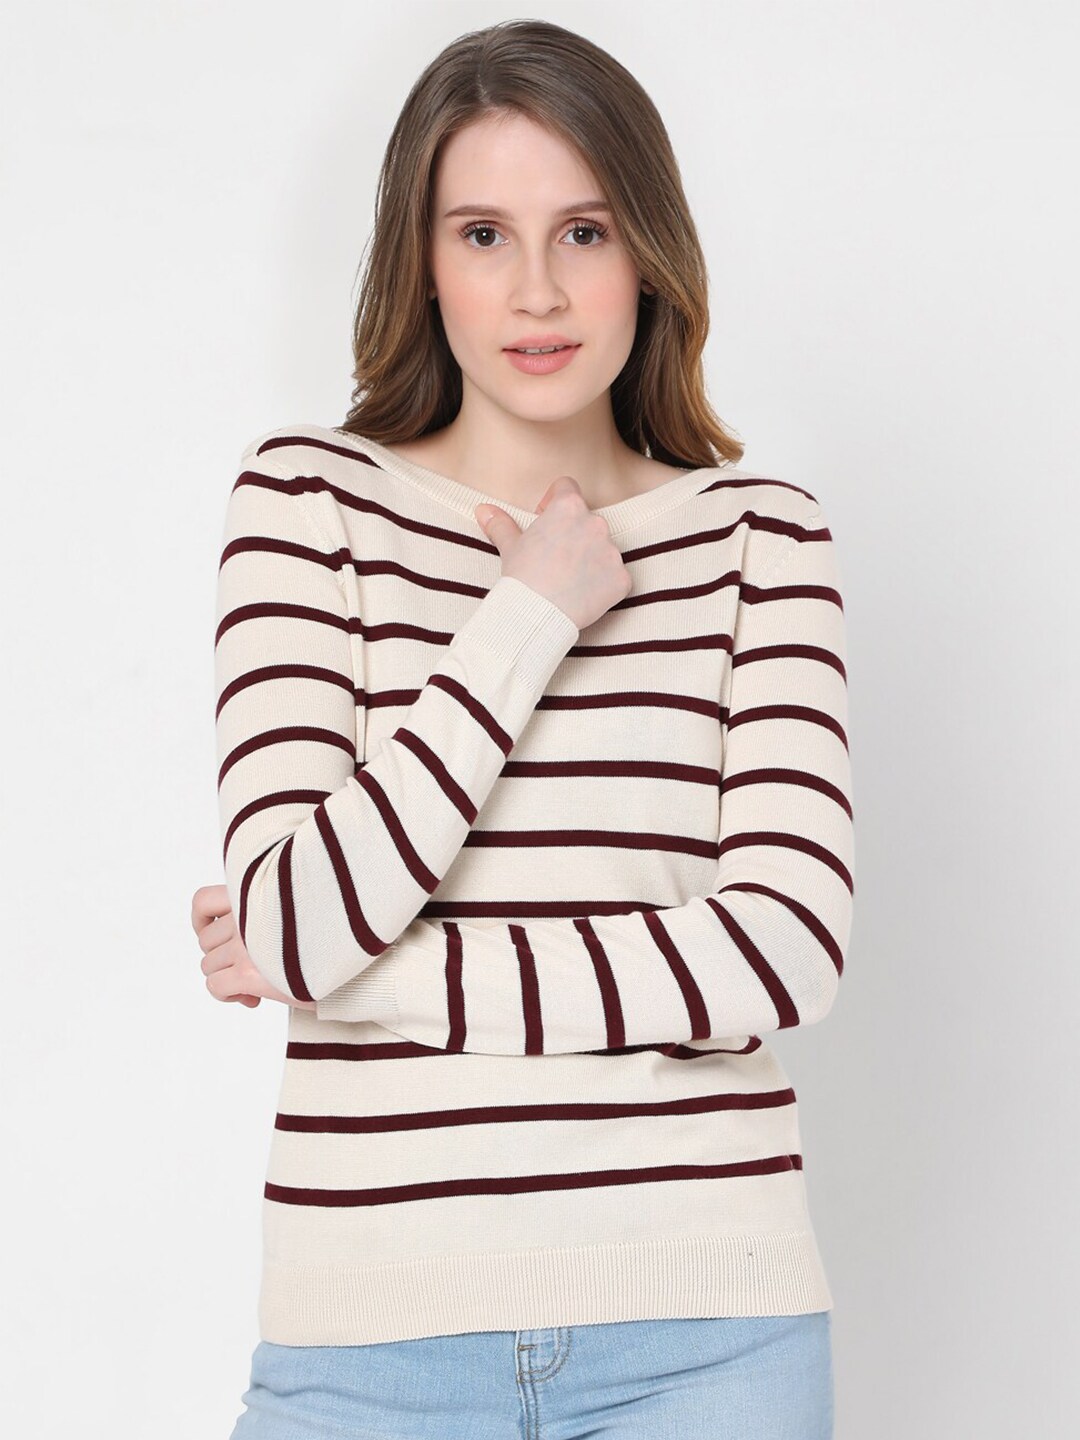 Vero Moda Women Off White & Purple Striped Cotton Pullover Price in India